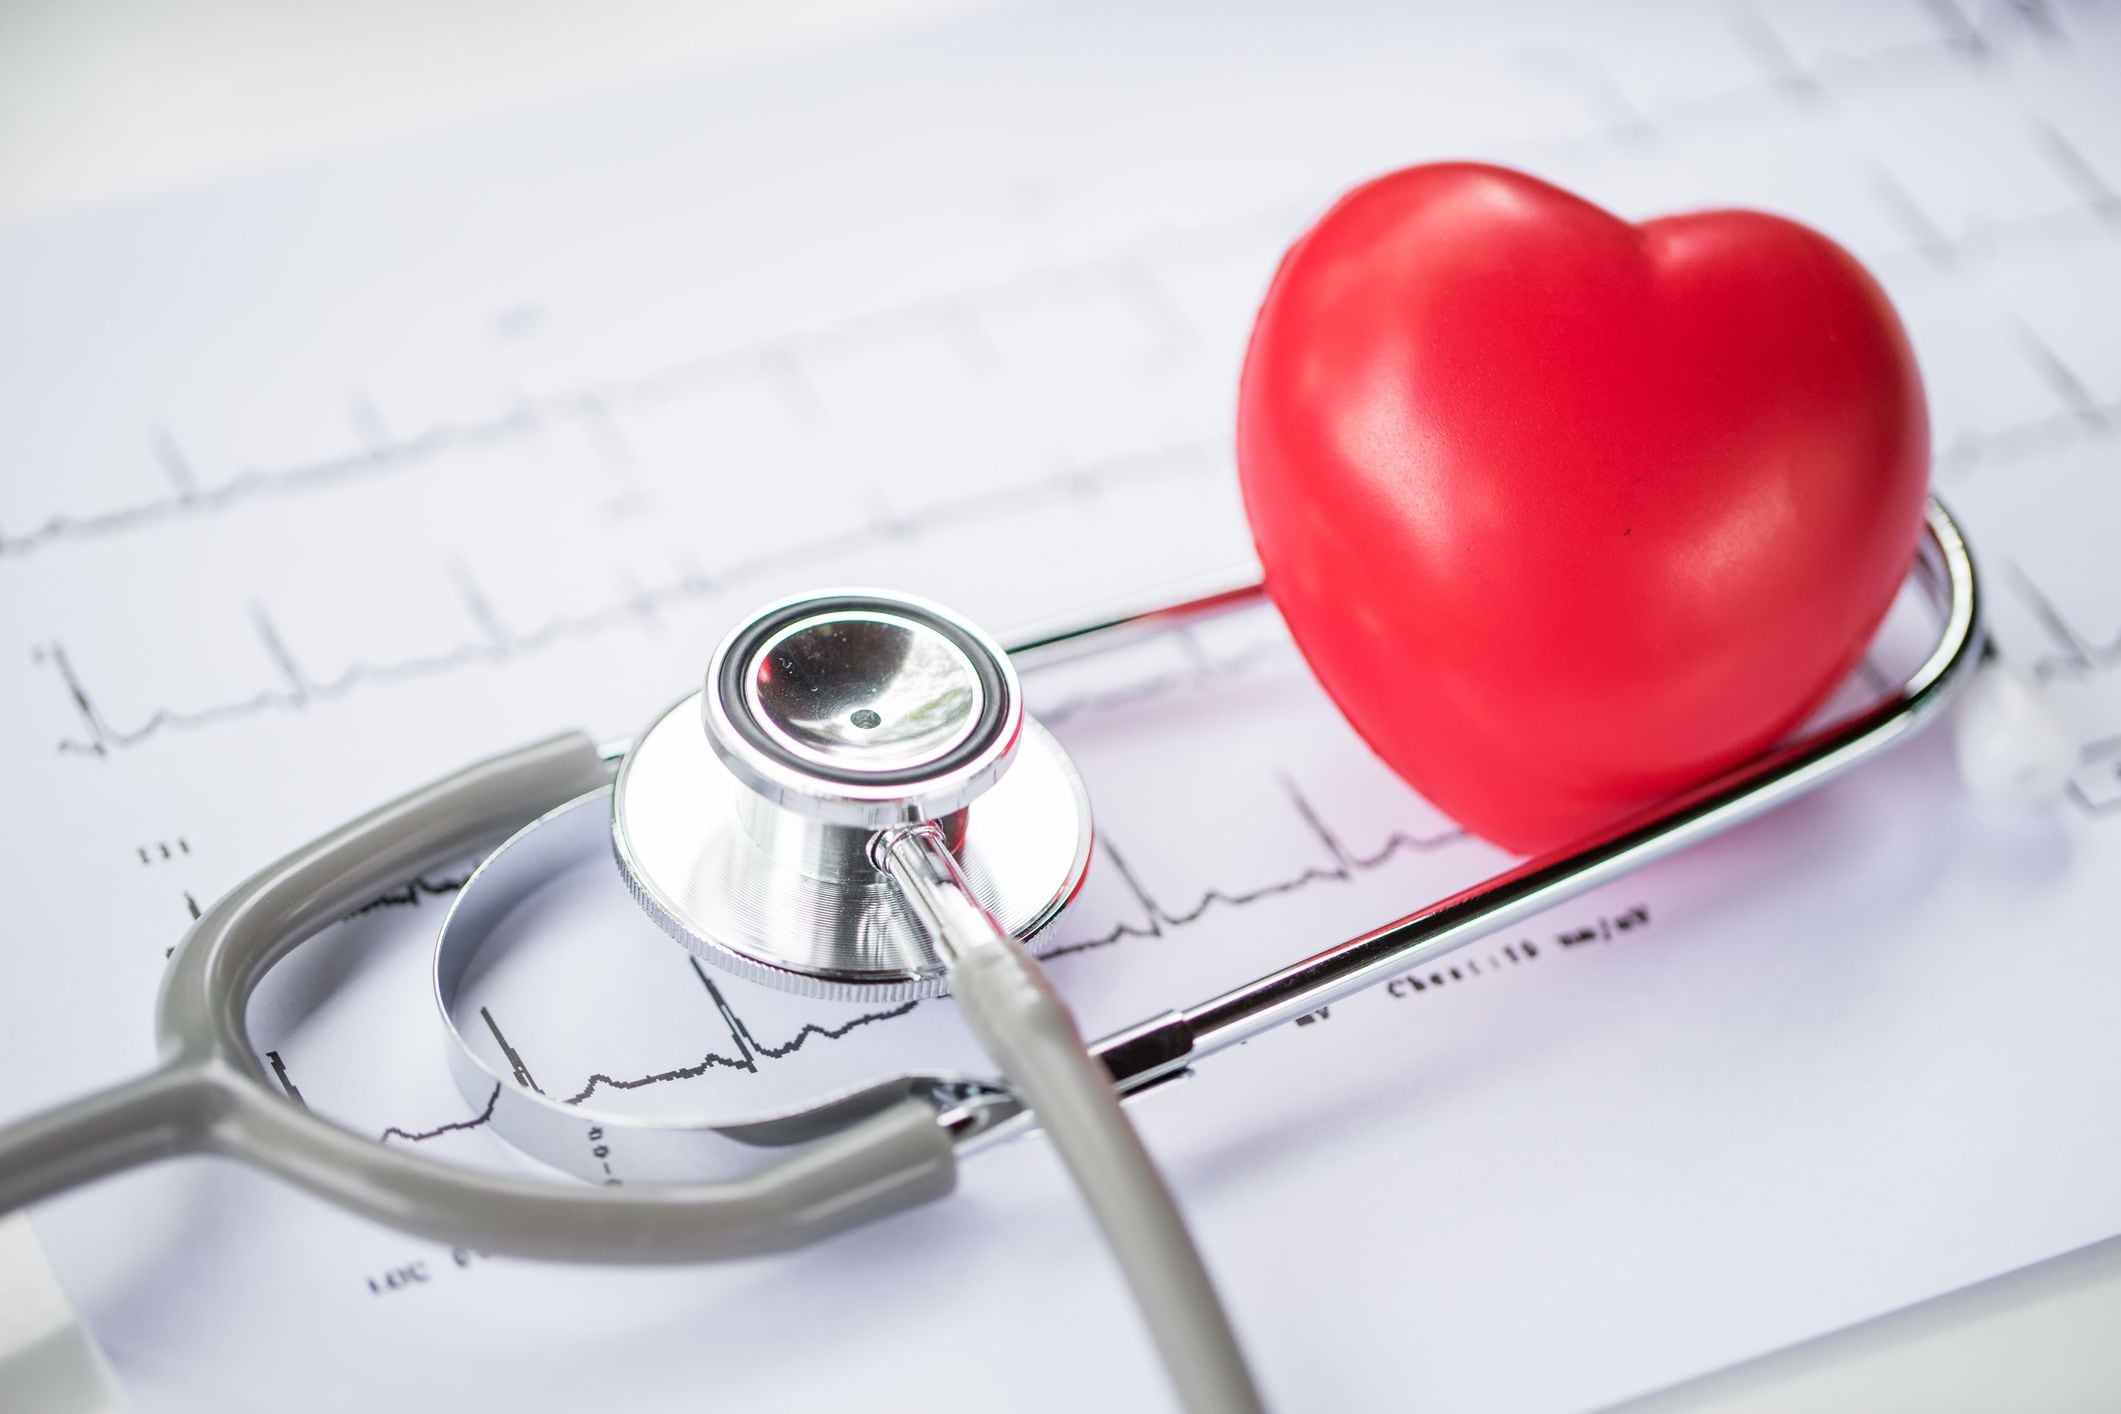 El 16 de septiembre se conmemora el Día Internacional de la Cardiología Intervencionista, un hito en la medicina moderna